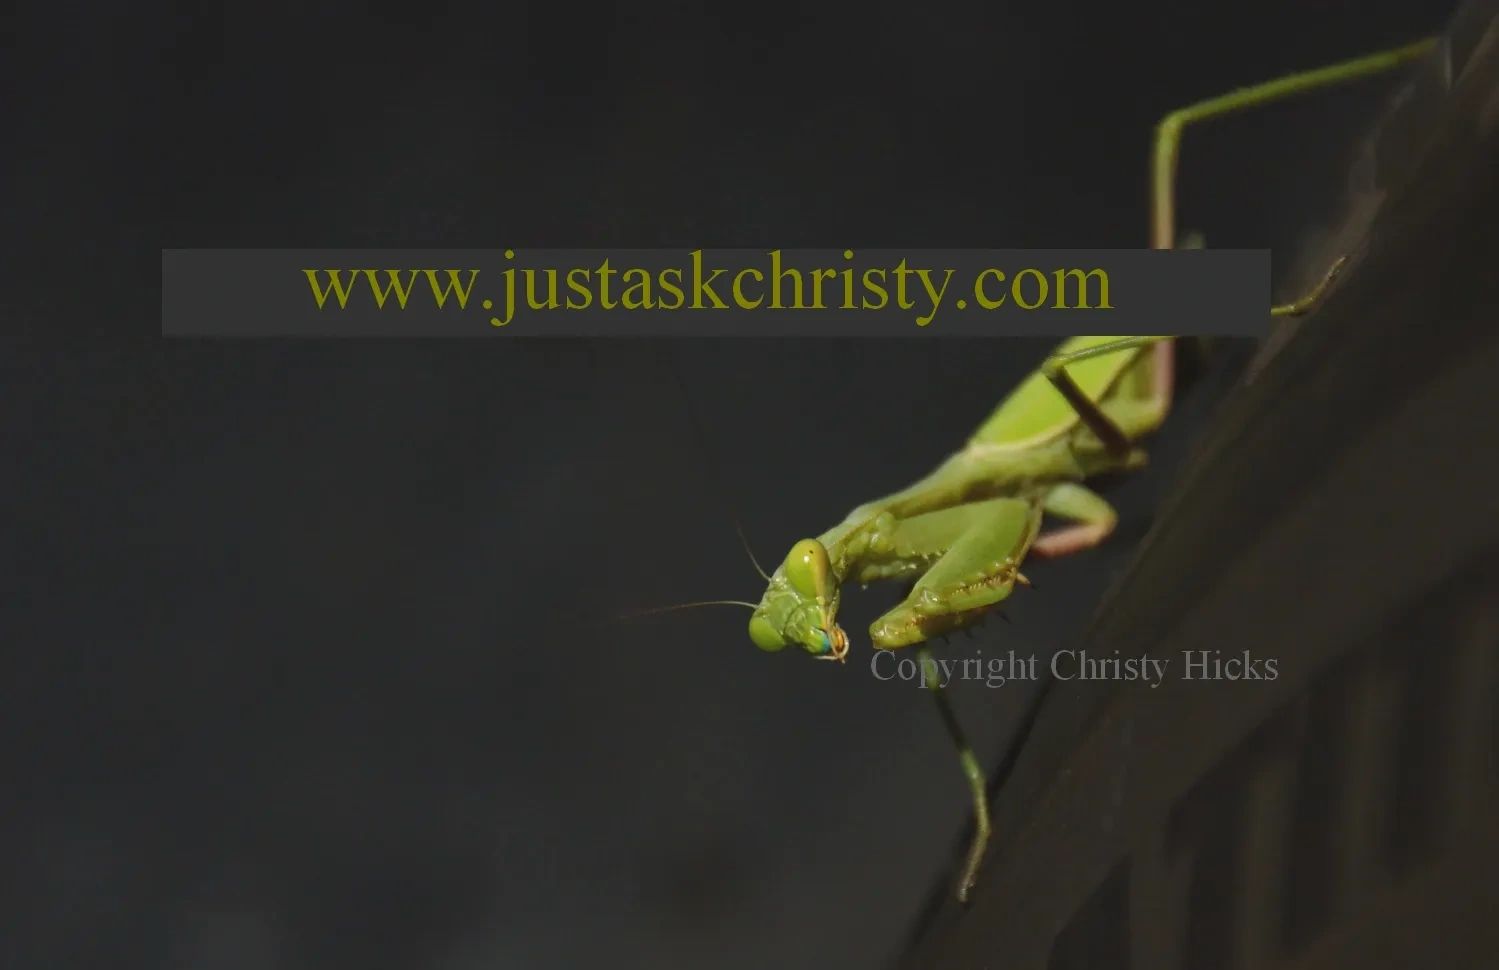 Close up image of a praying mantis.